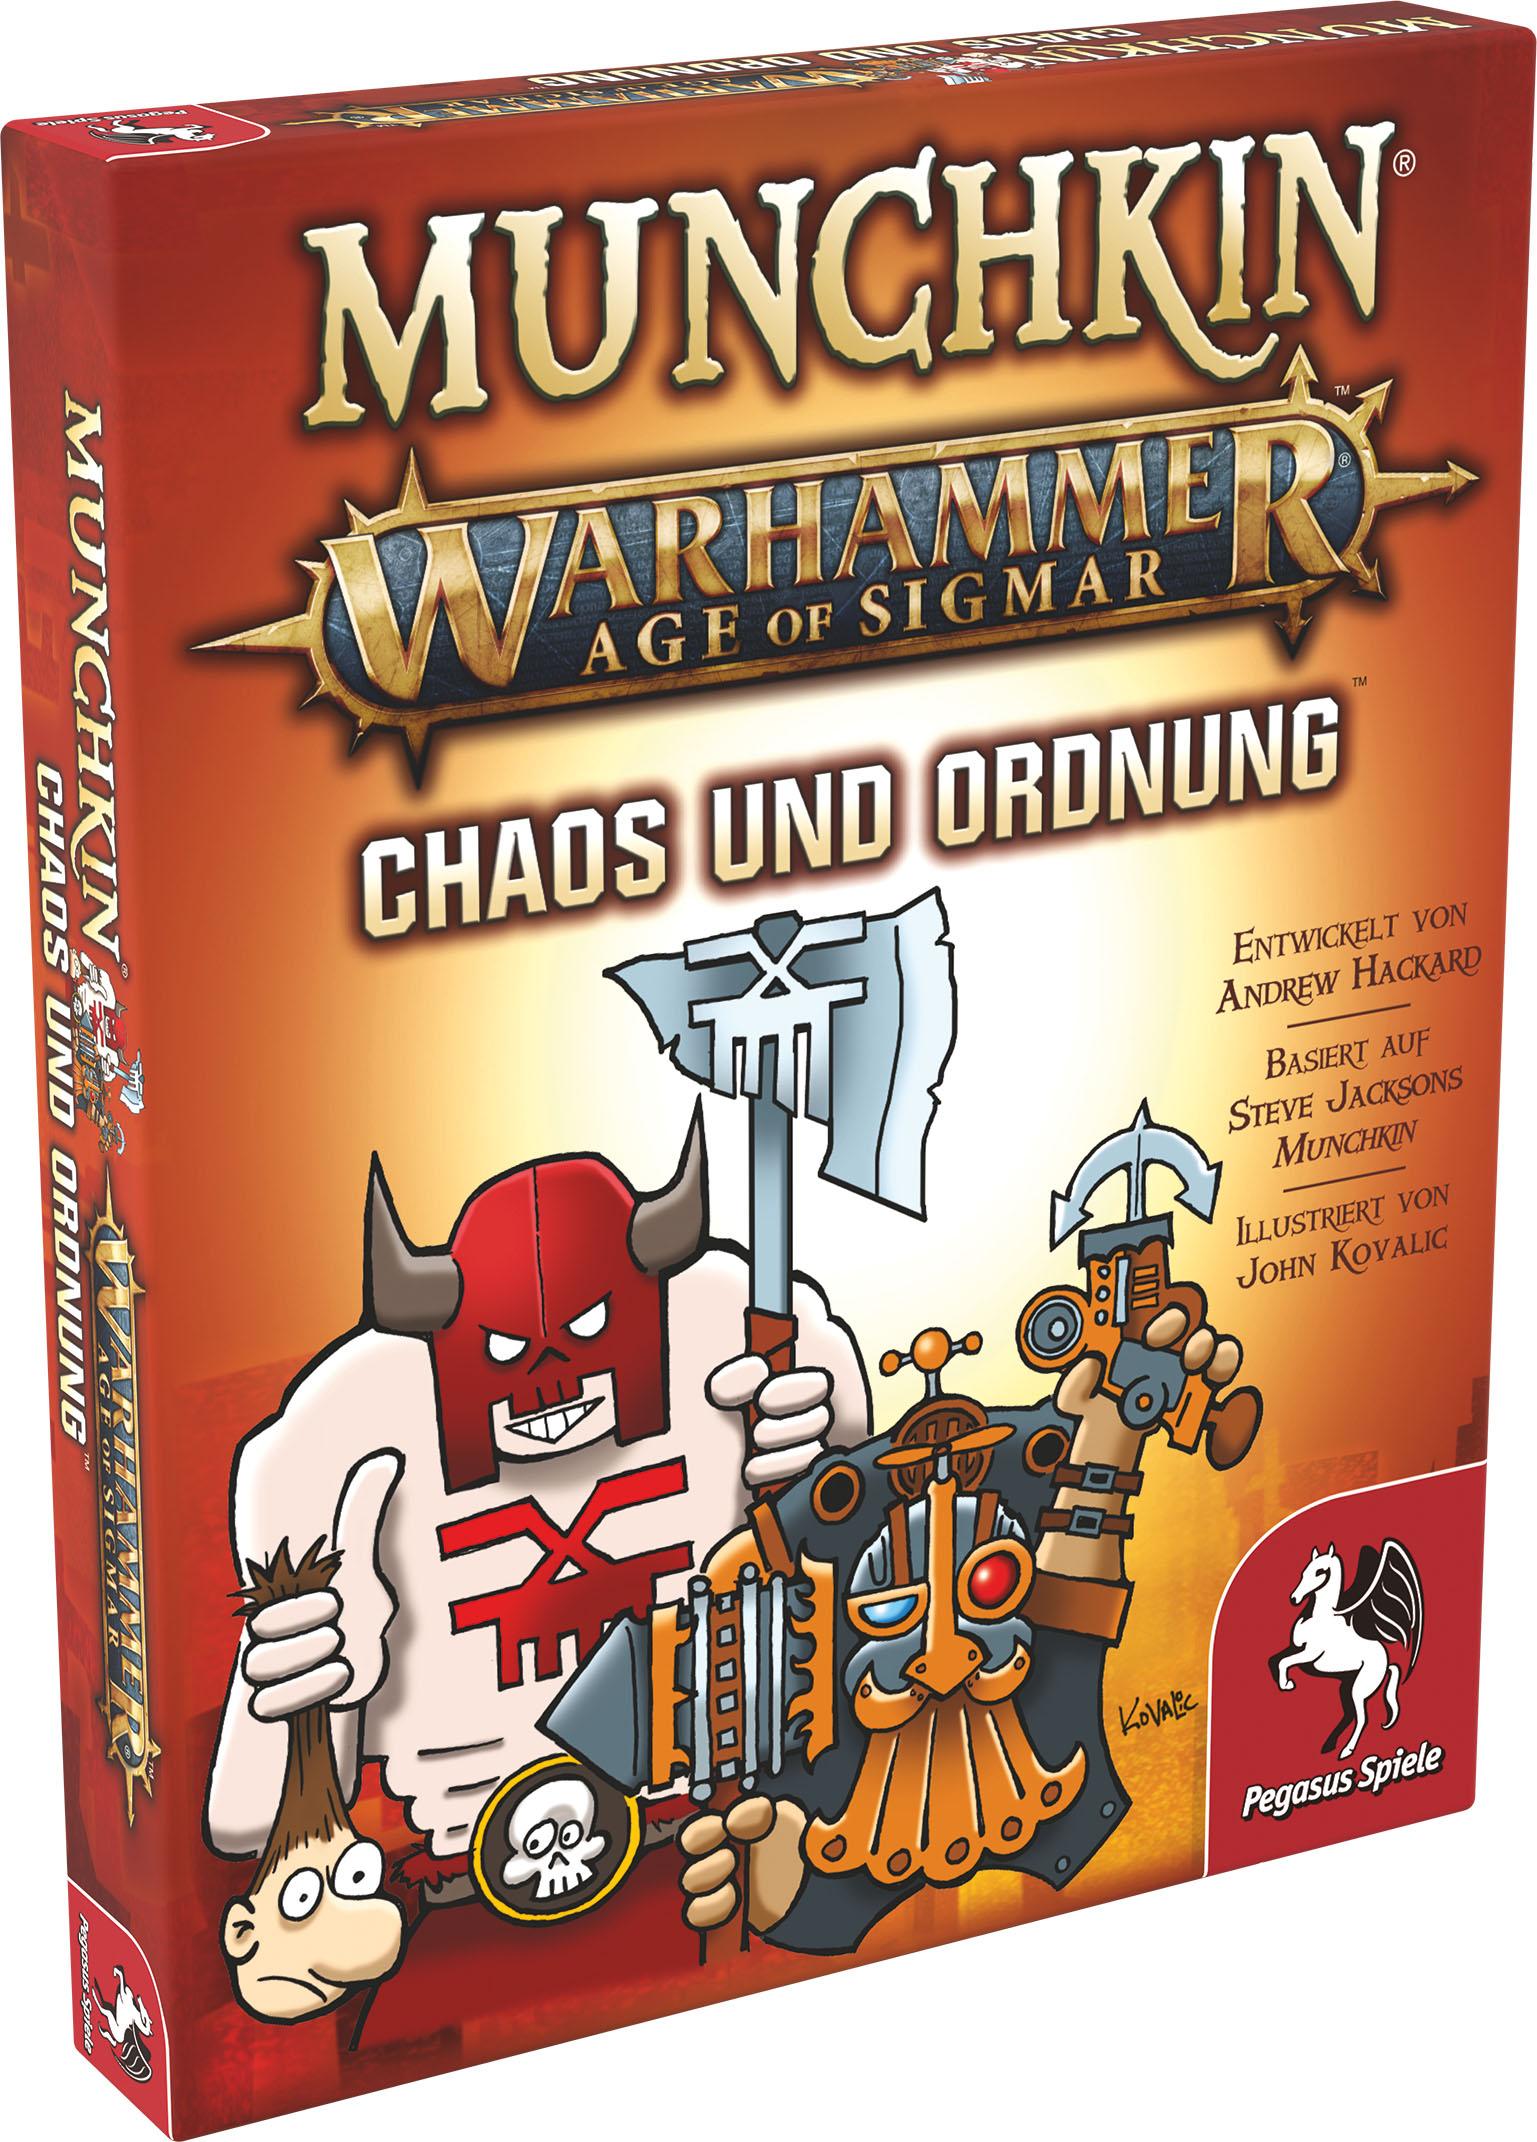 Munchkin: Warhammer Age of Sigmar - Chaos und Ordnung